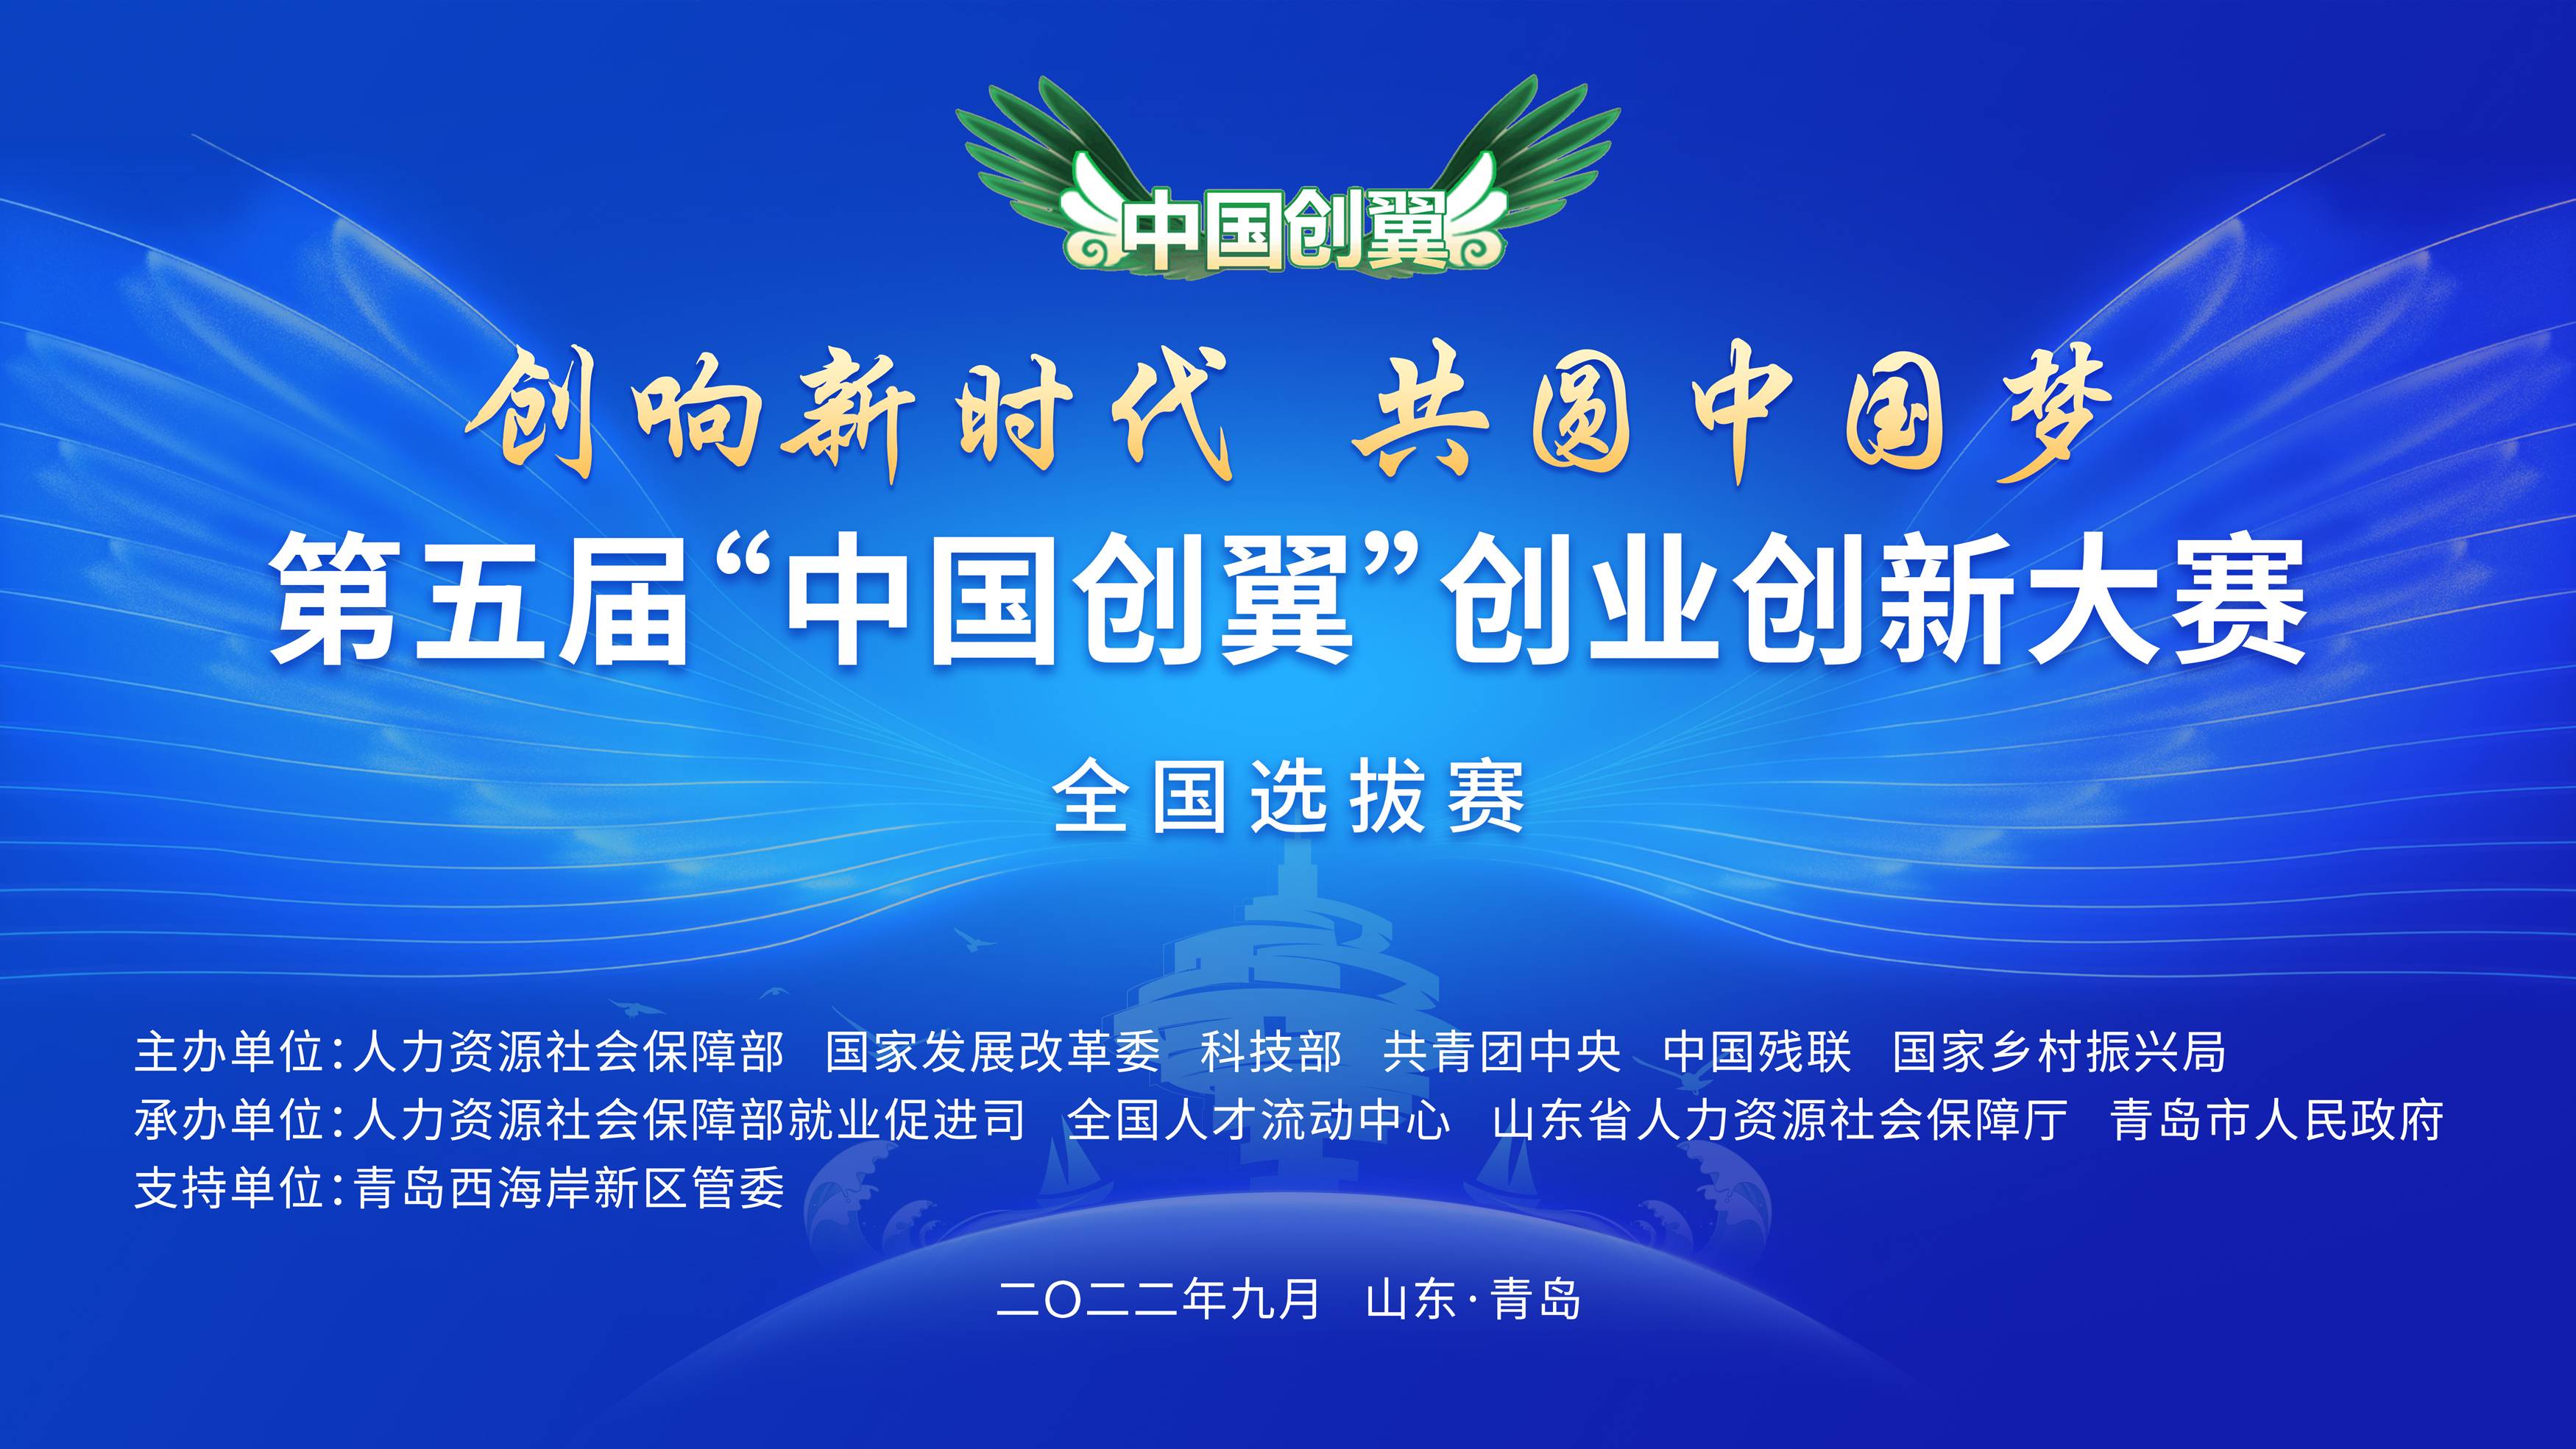 第五届“中国创翼”创业创新大赛全国选拔赛在青岛启动